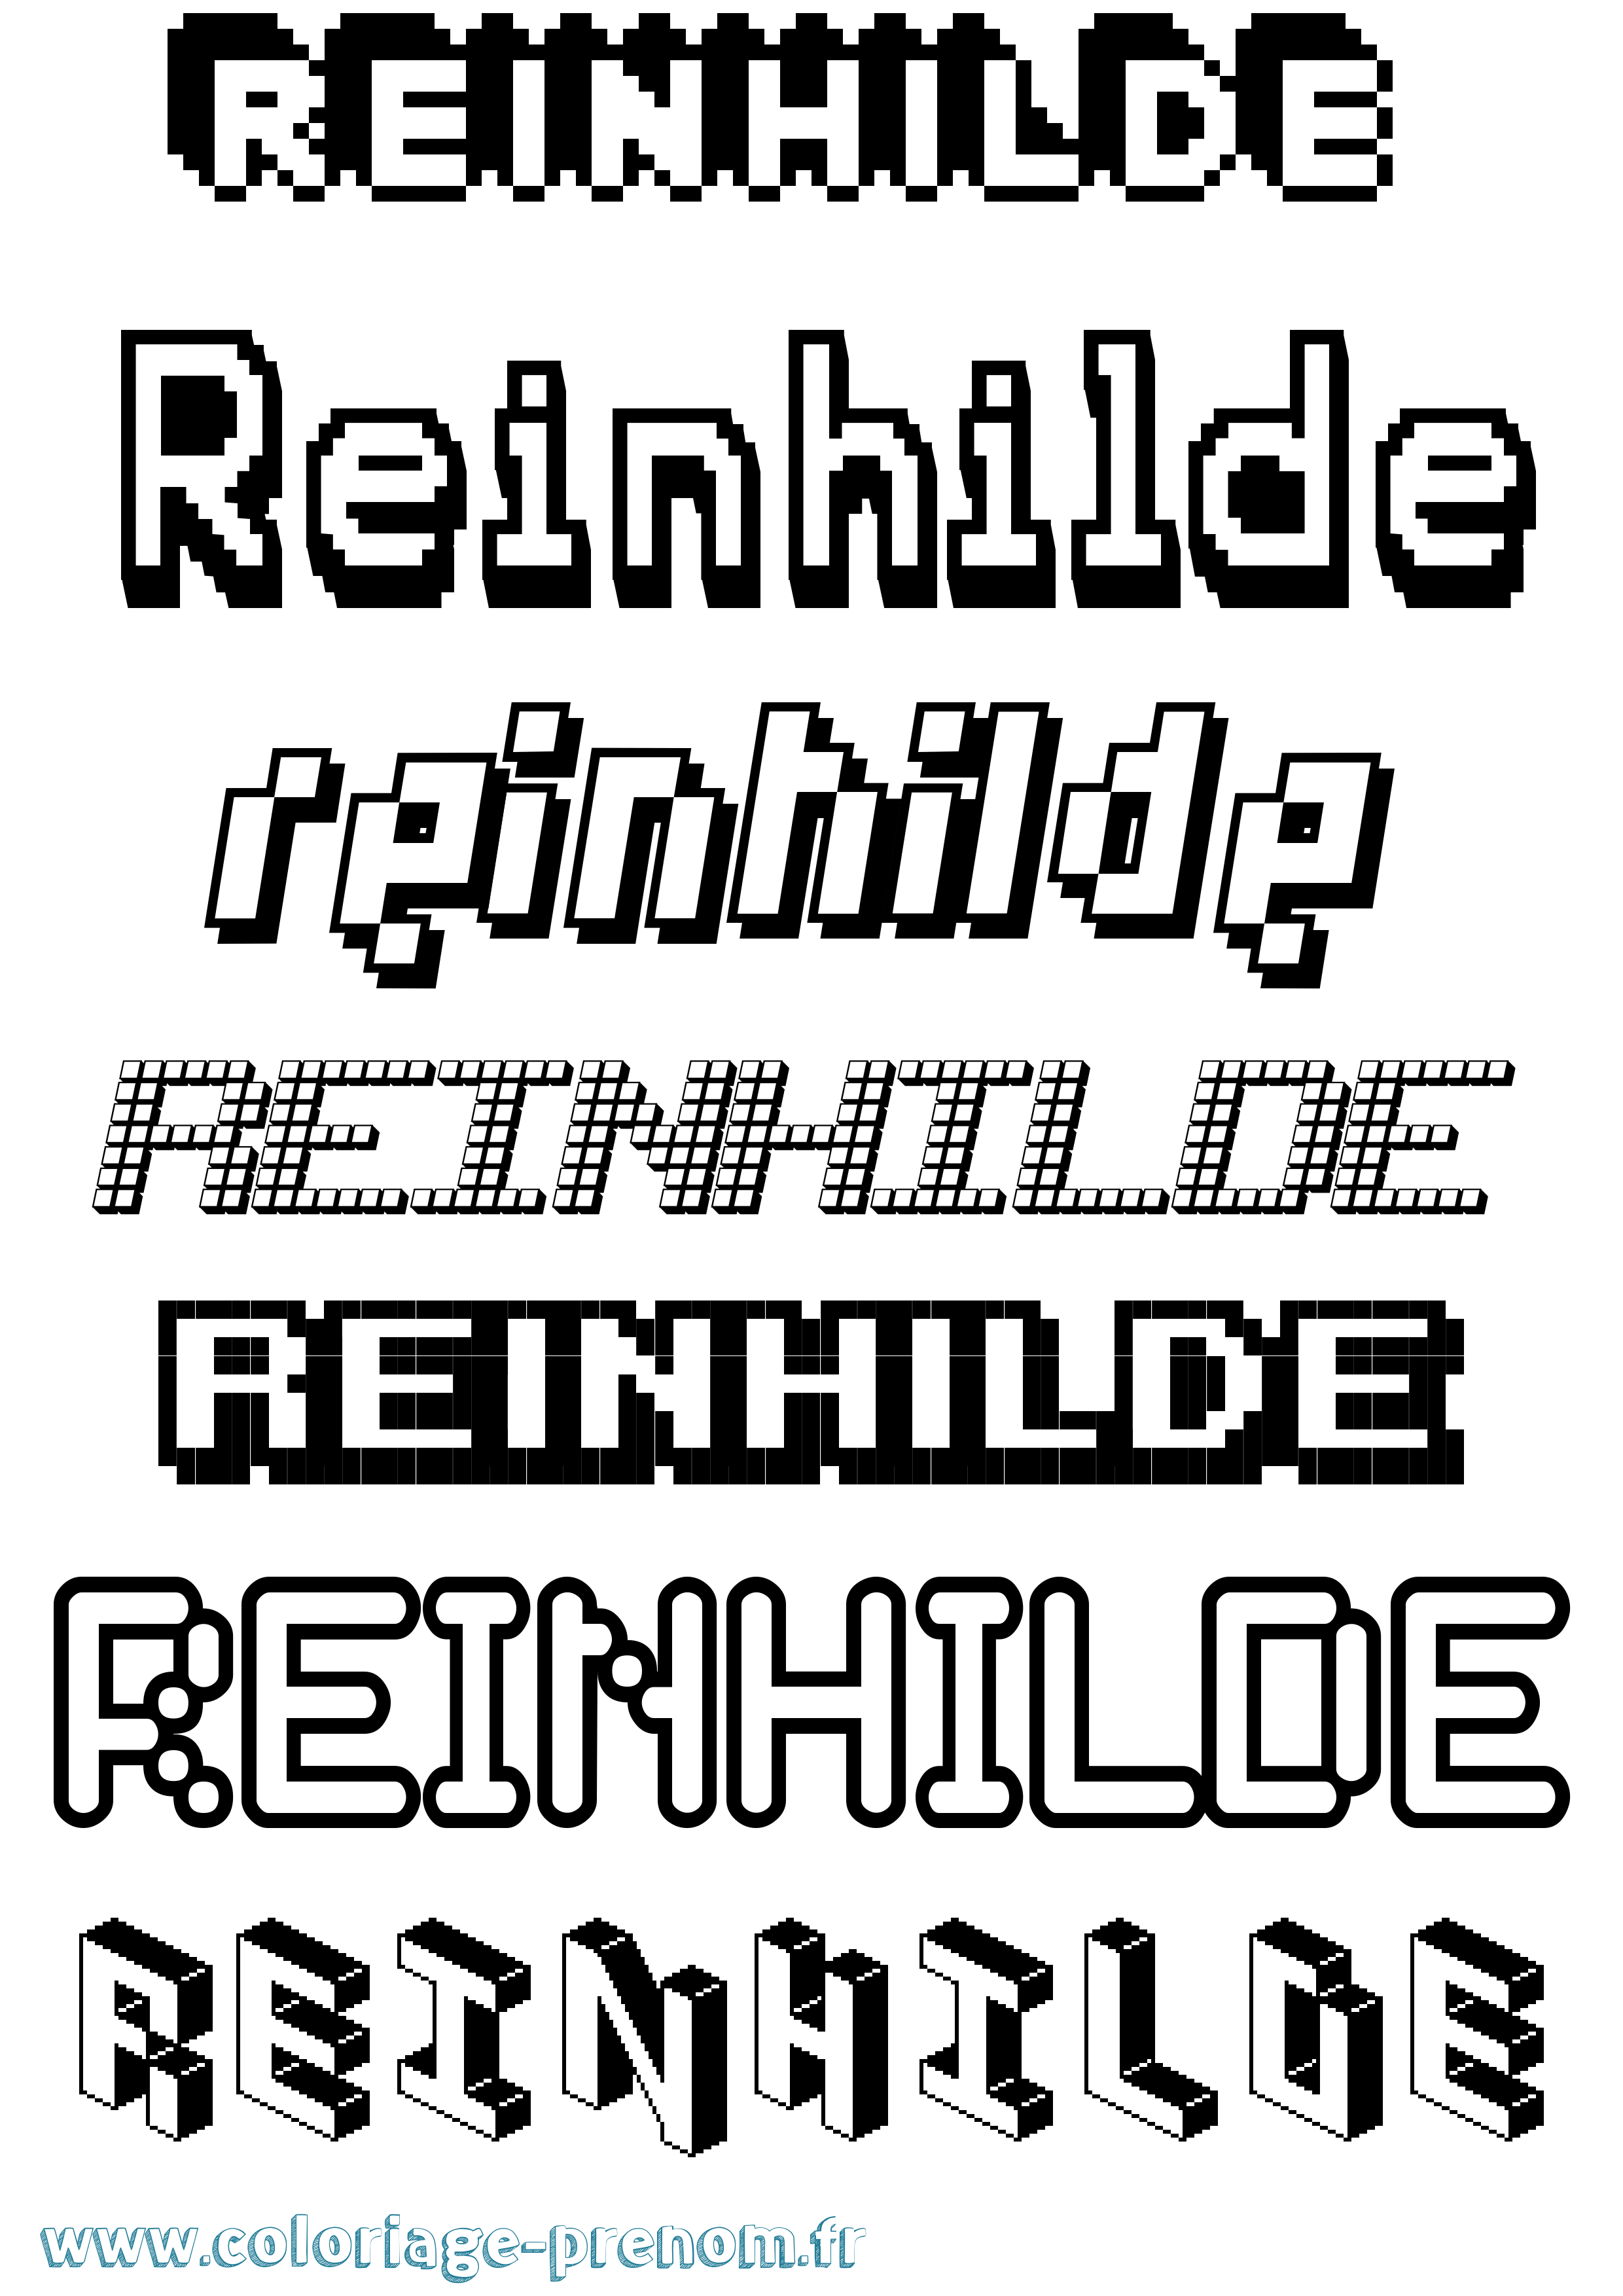 Coloriage prénom Reinhilde Pixel